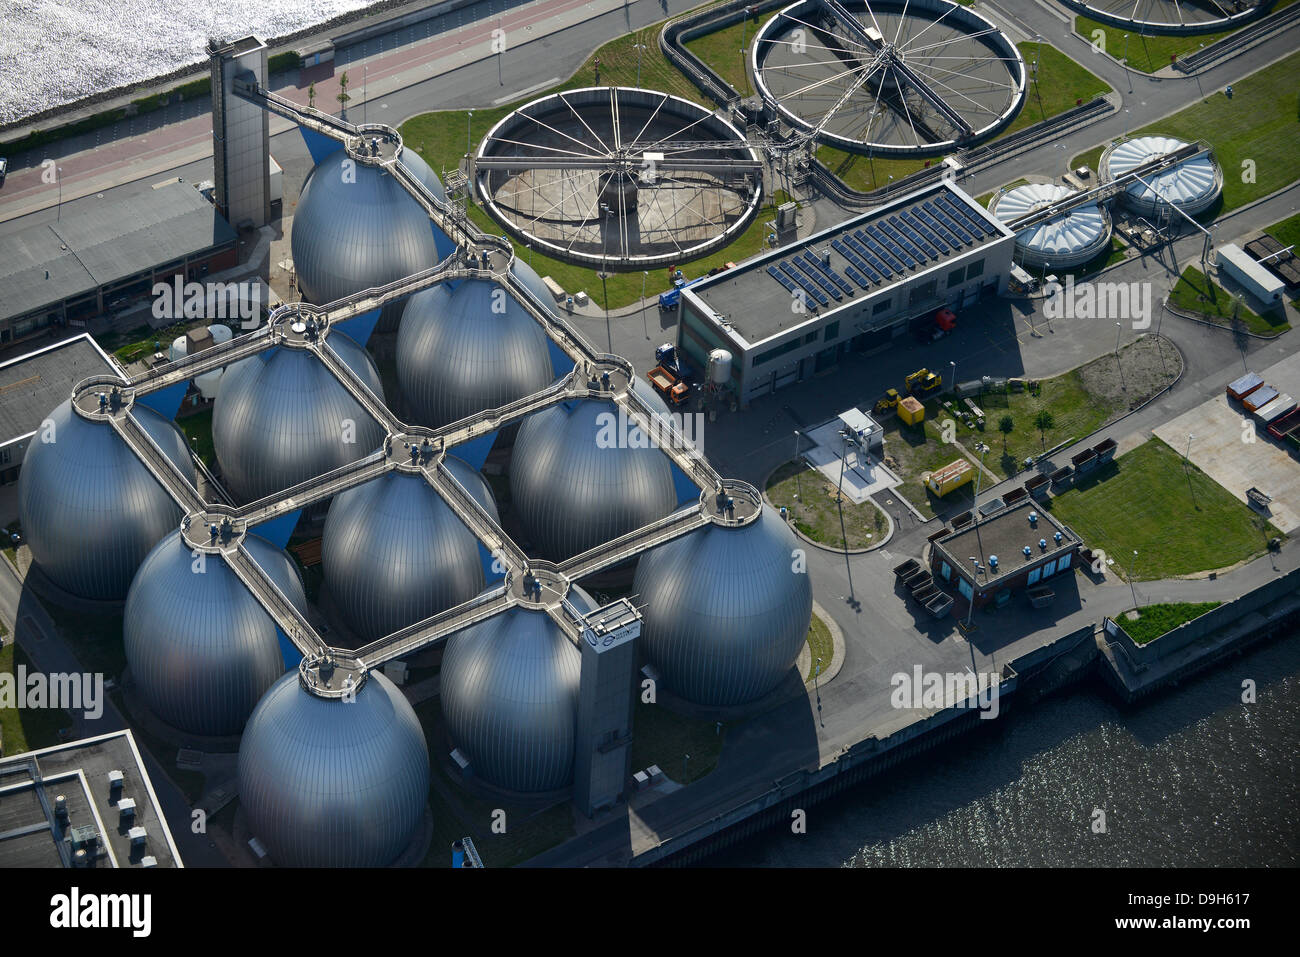 DEUTSCHLAND Hamburg, Kläranlage und Biogasanlage der Firma Hamburg Wasser, in den Stahltanks wird Biogas aus Abwasser verarbeitet, im Digestergasturm und im Clarifier-Bassin wird der Klärschlamm verbrannt Stockfoto